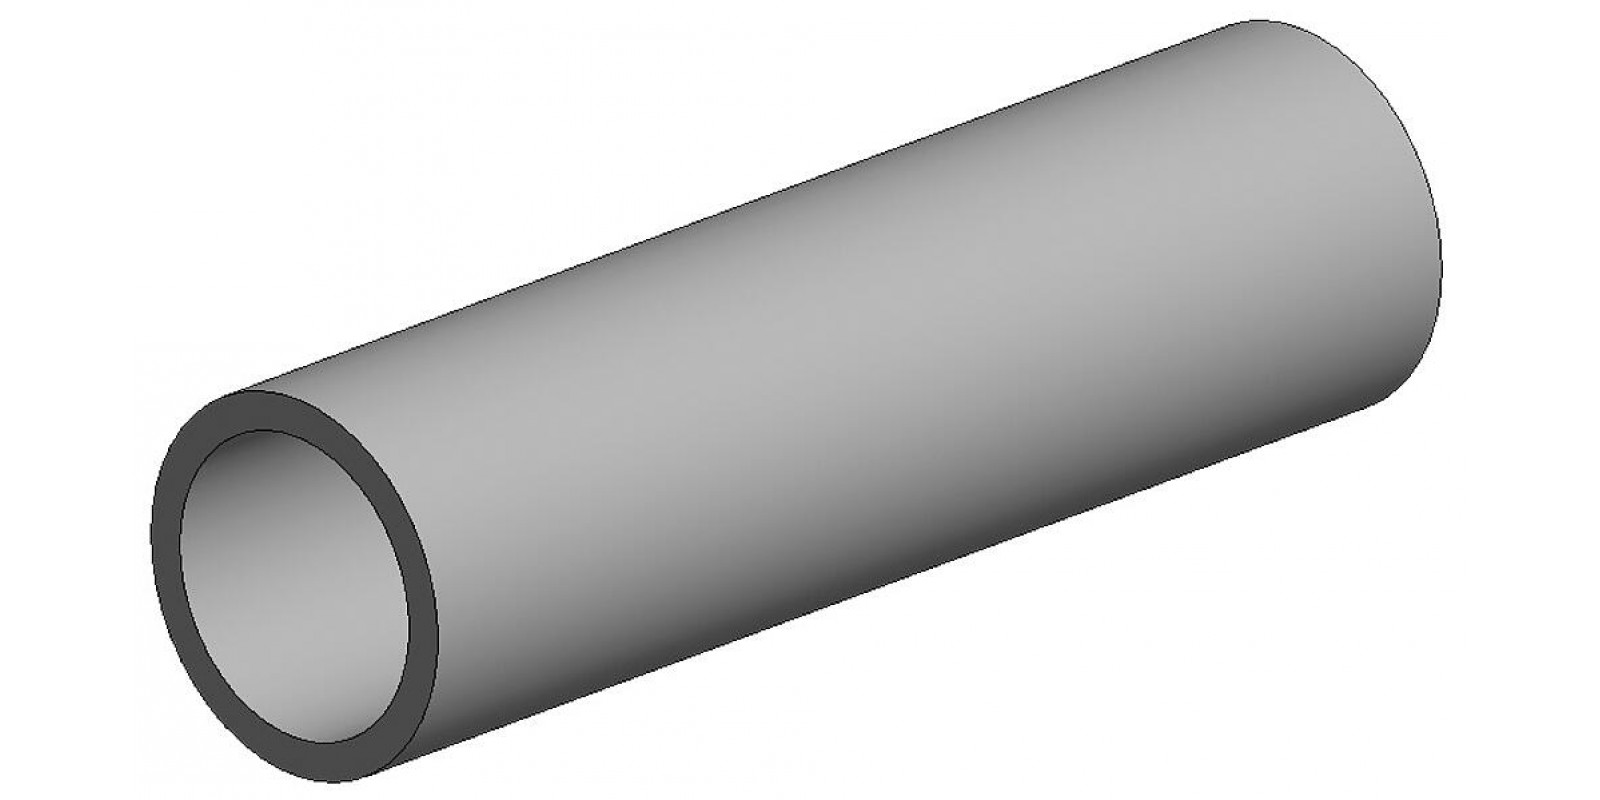 FA500226  White polystyrene round tube, diameter 4.80 mm - 3/16